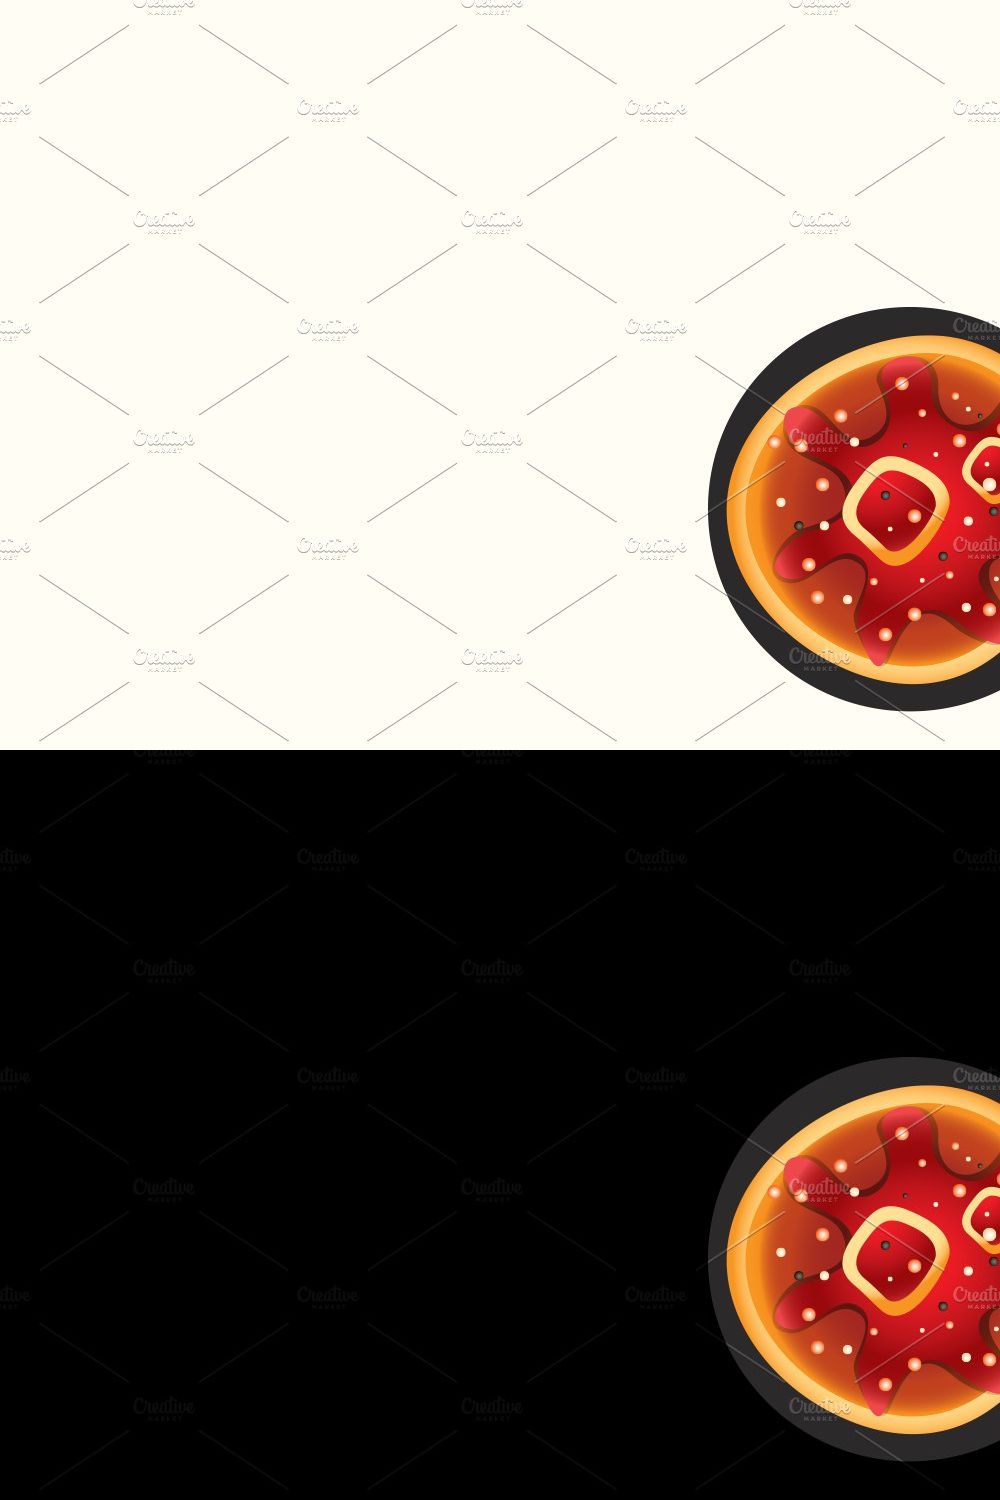 Pizza shop Logo pinterest preview image.